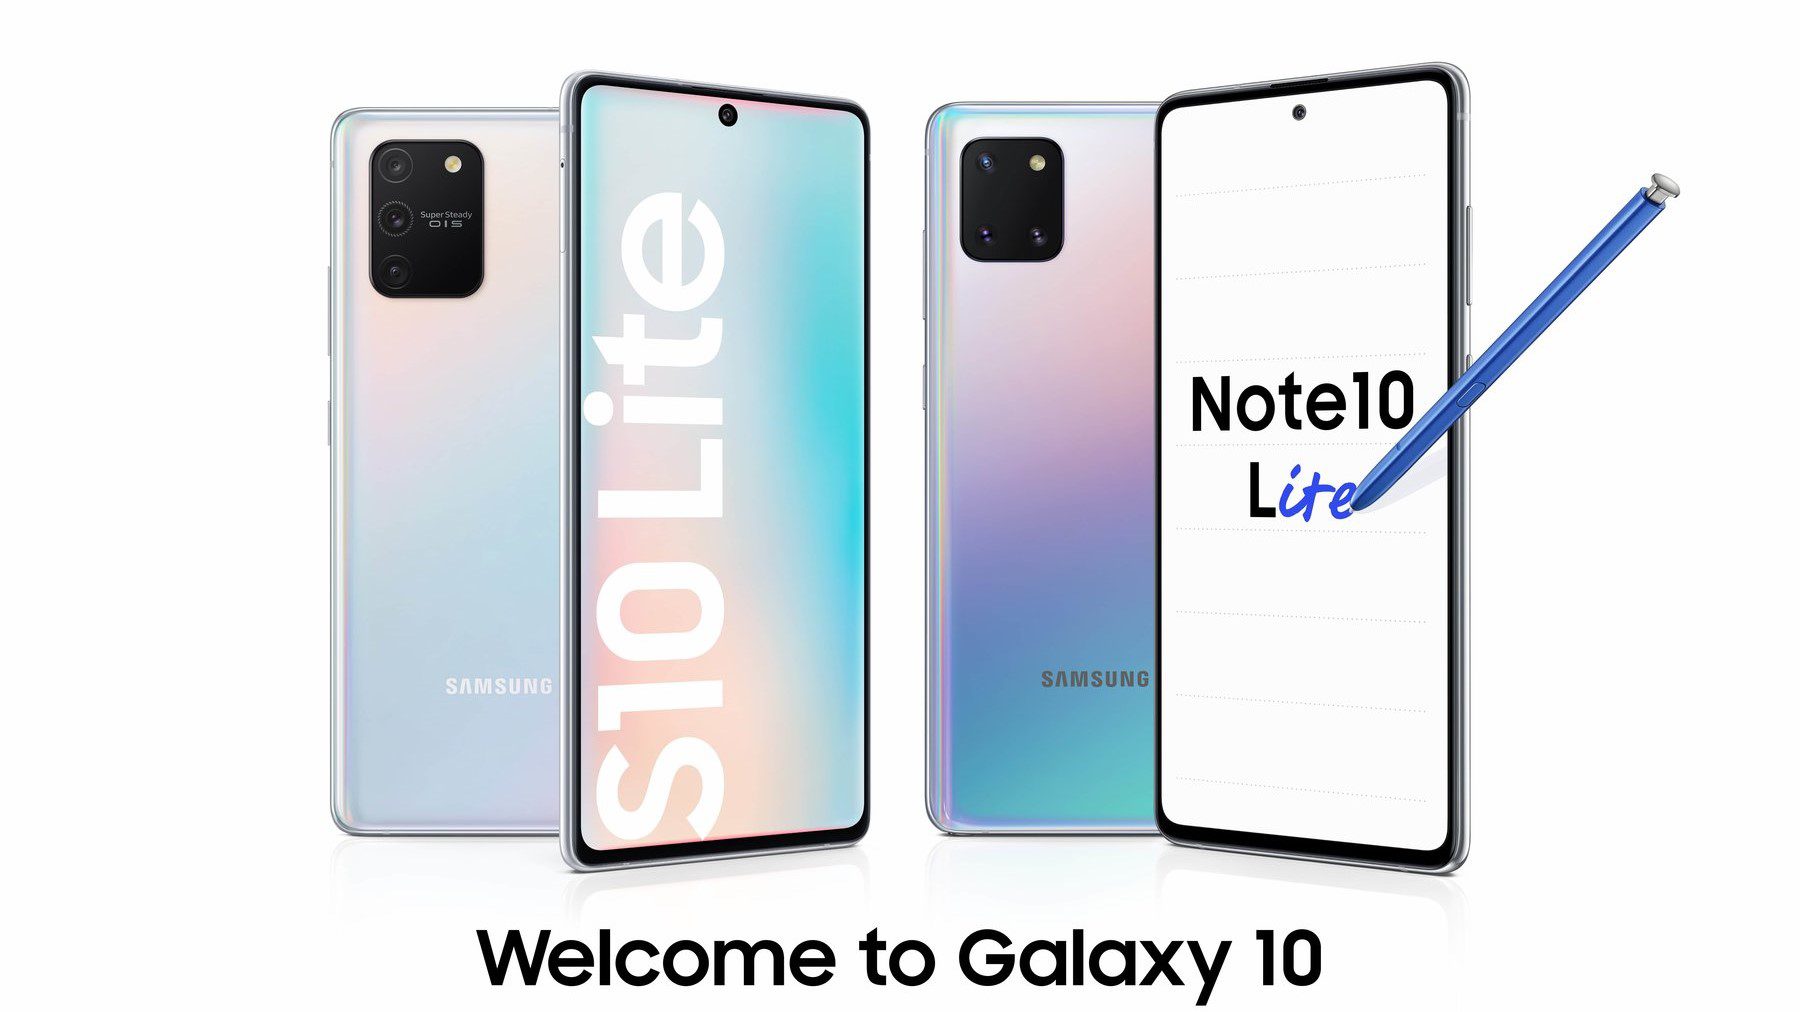 Galaxy S10 Lite und Note 10 Lite sind offiziell von Samsung gemacht; siehe preise